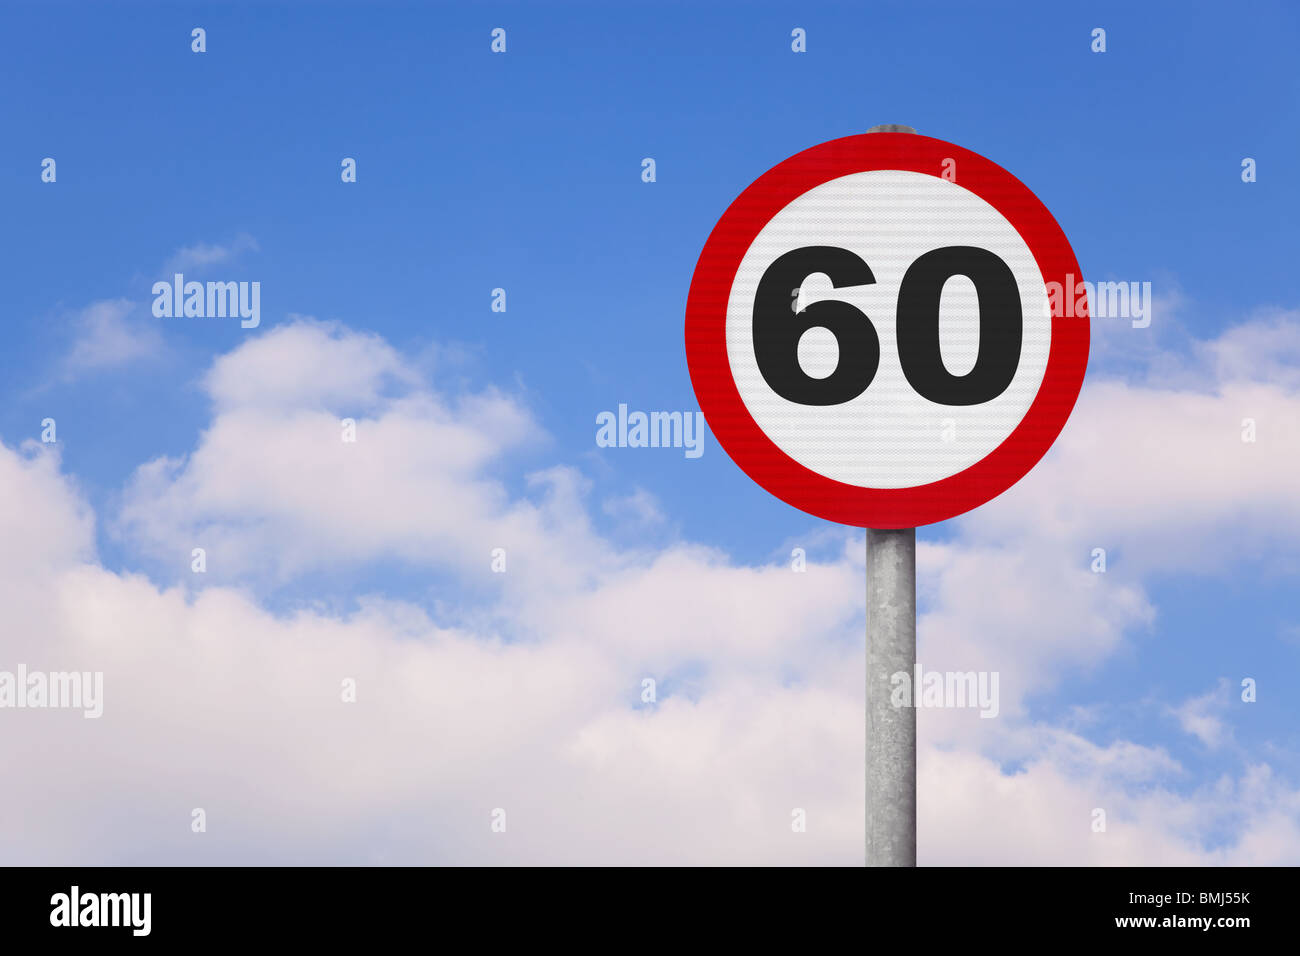 Un round cartello stradale con il numero 60 su di esso contro un blu cielo nuvoloso. Foto Stock